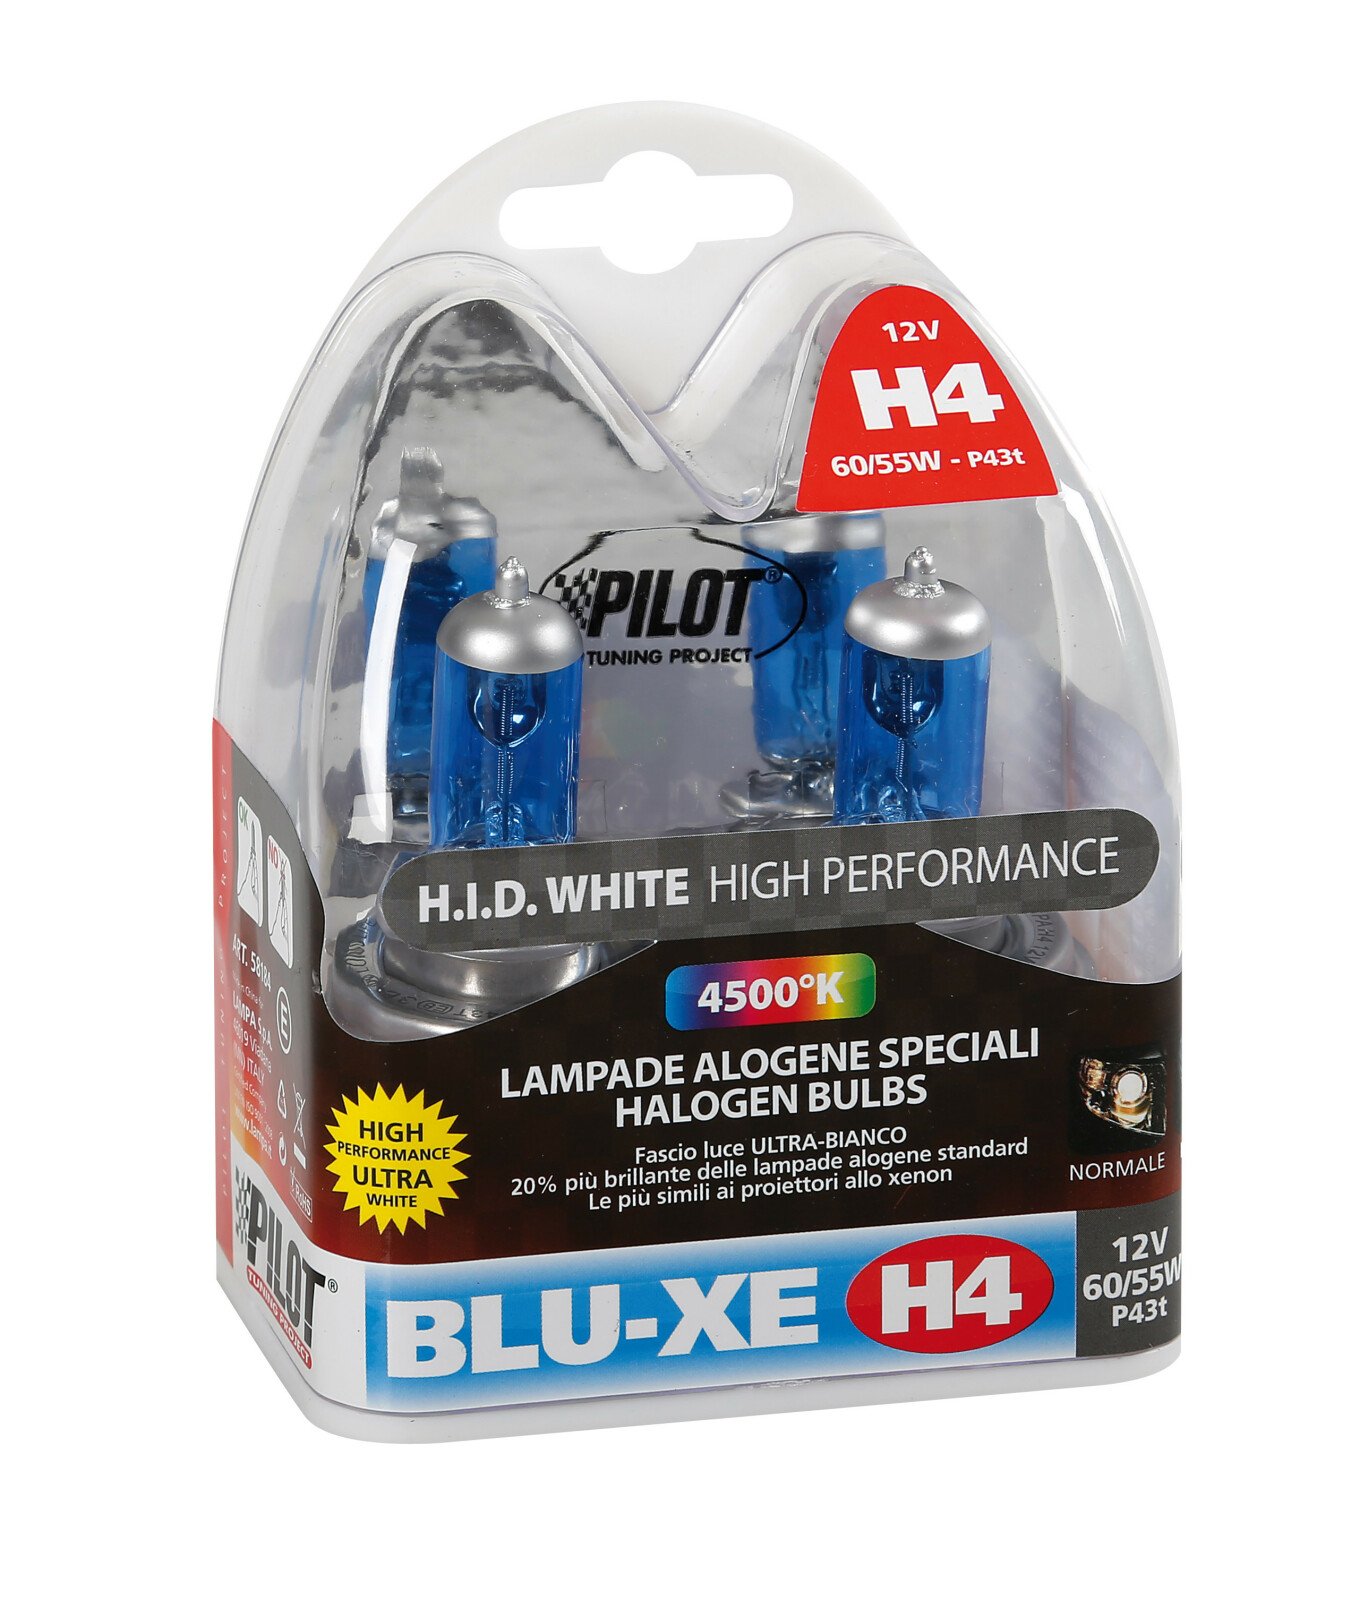 Blu-Xe halogén H4 izzó P43t 12V 60/55W 2db thumb